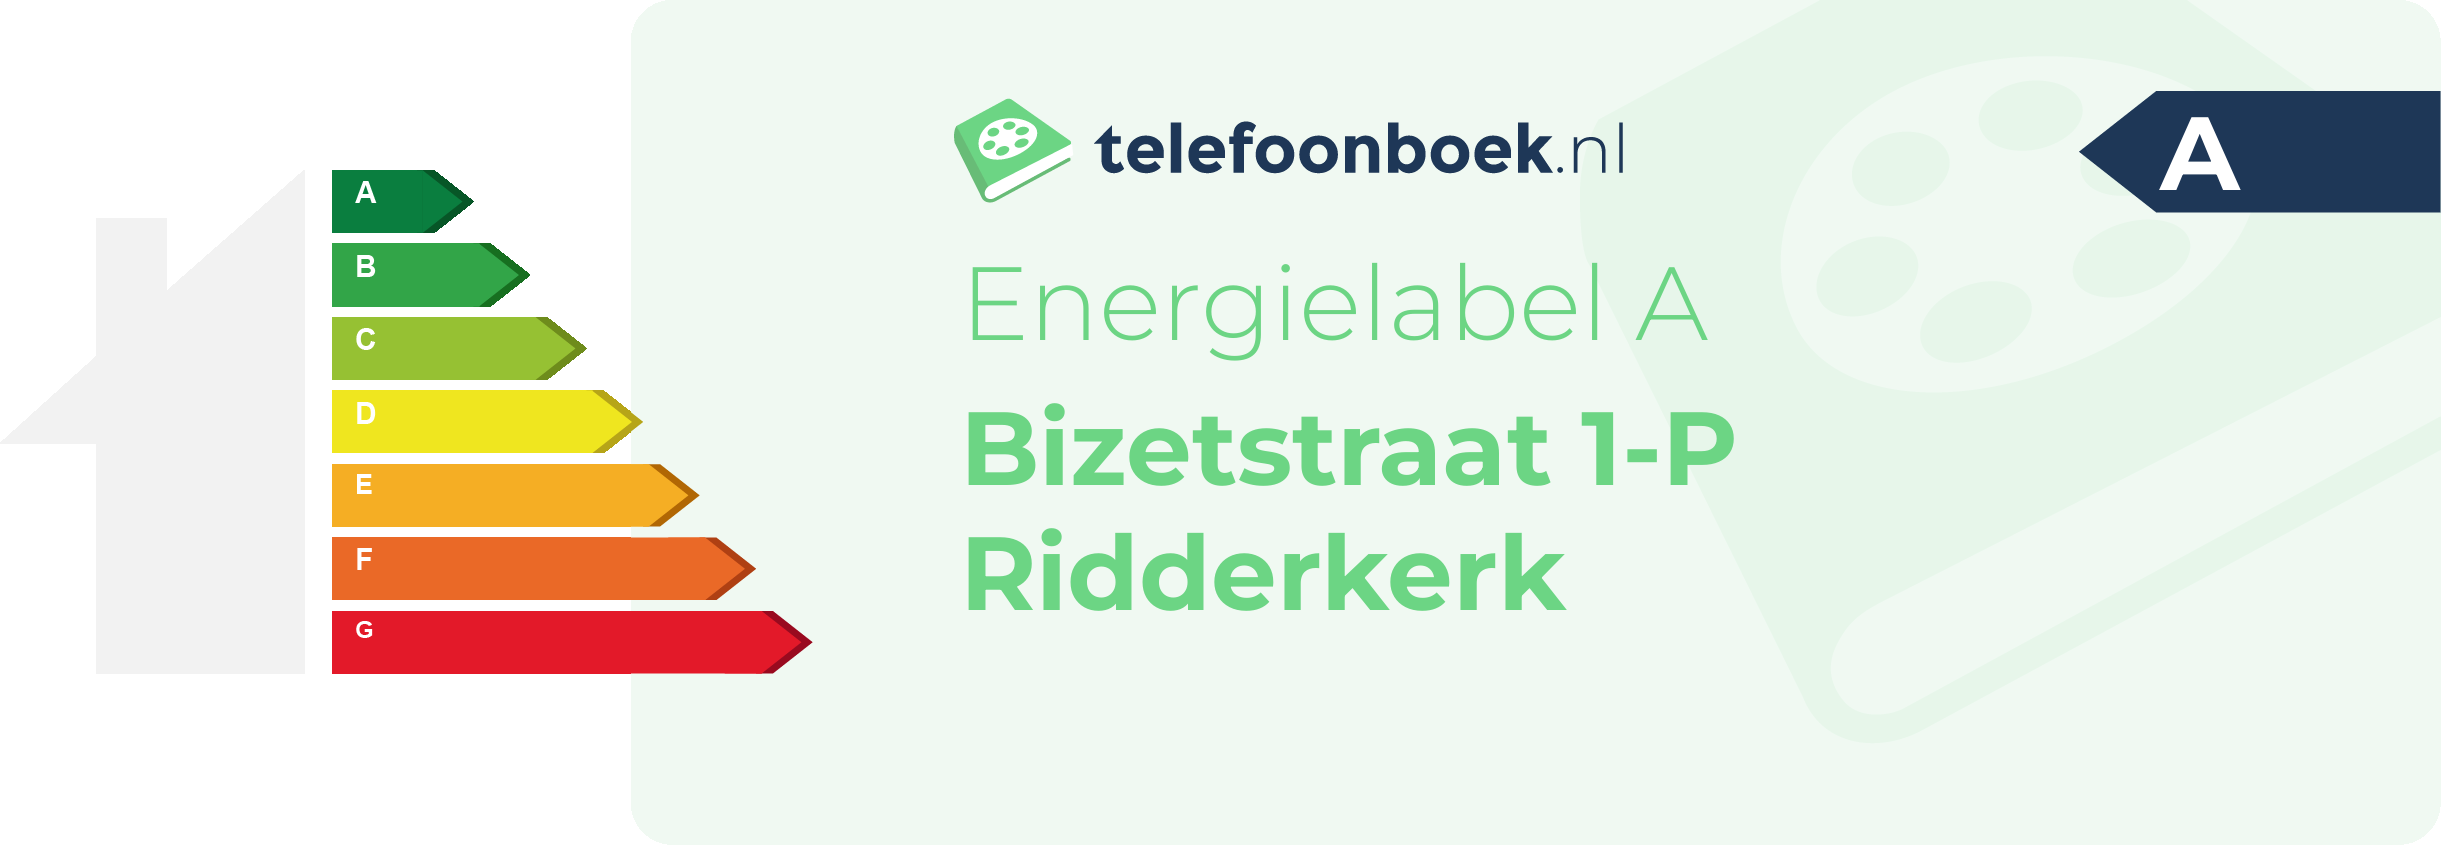 Energielabel Bizetstraat 1-P Ridderkerk